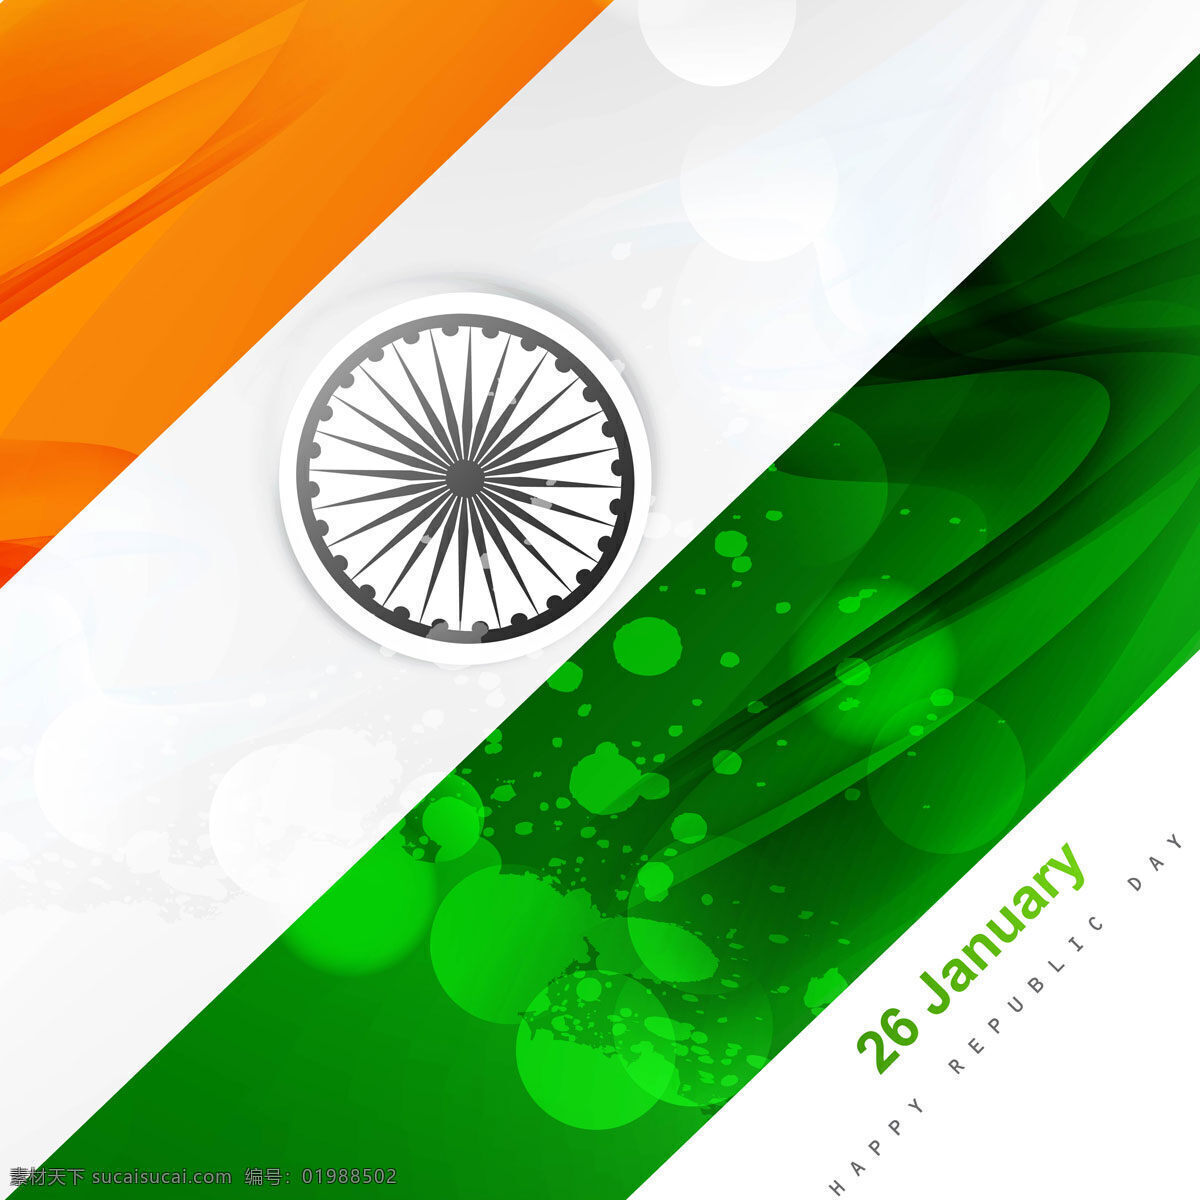 现代 印度 国旗 背景摘要 波 垃圾 节日 假日 轮 和平 印度国旗 独立日 国家 自由 天 政府 呈波浪状 光泽 白色